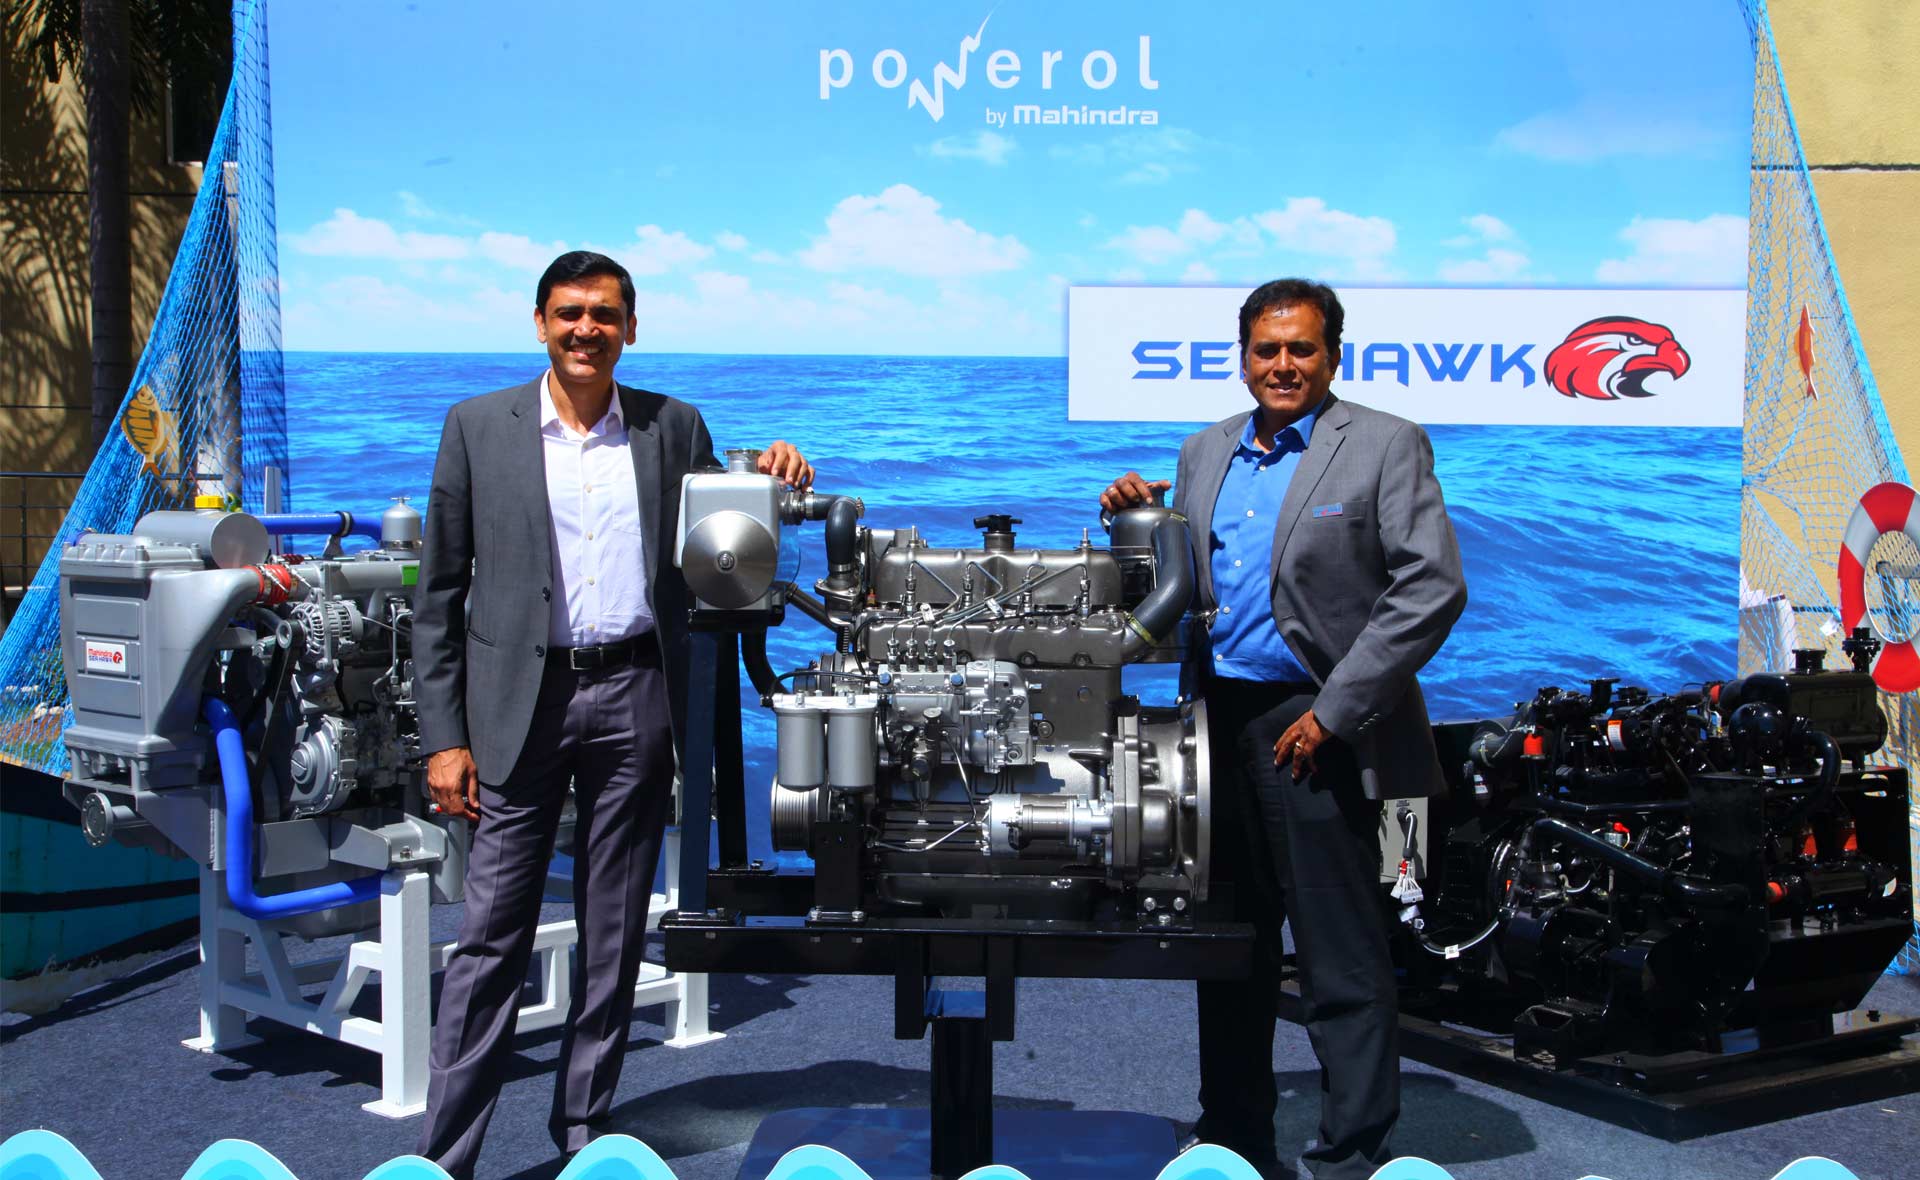 Mahindra-Powerol-Seahawk-Range-of-Marine-Engines